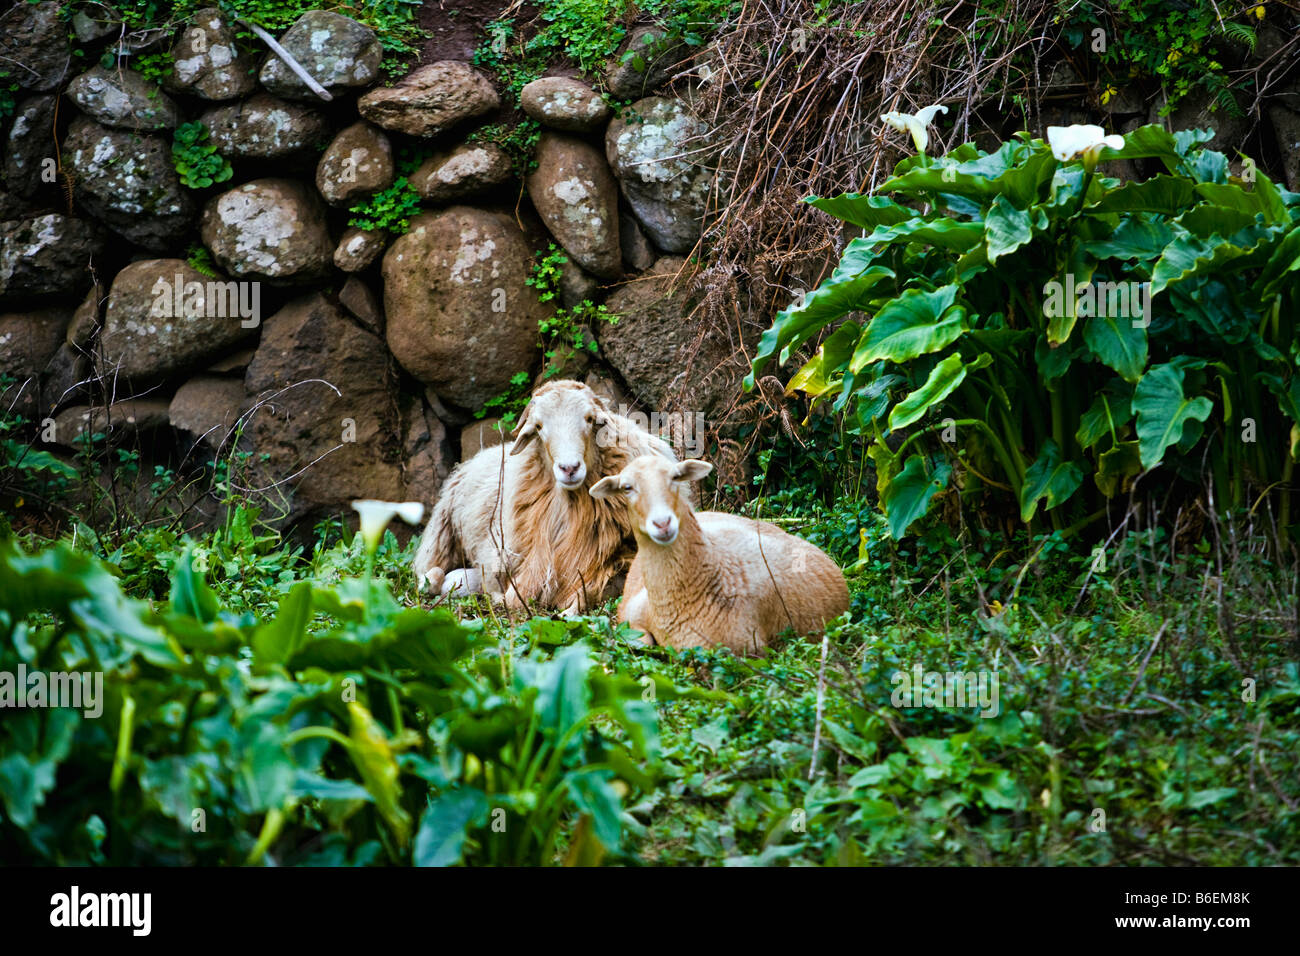 Spain. Canary Islands. La Gomera Island. El Cedro village. Sheep. Stock Photo